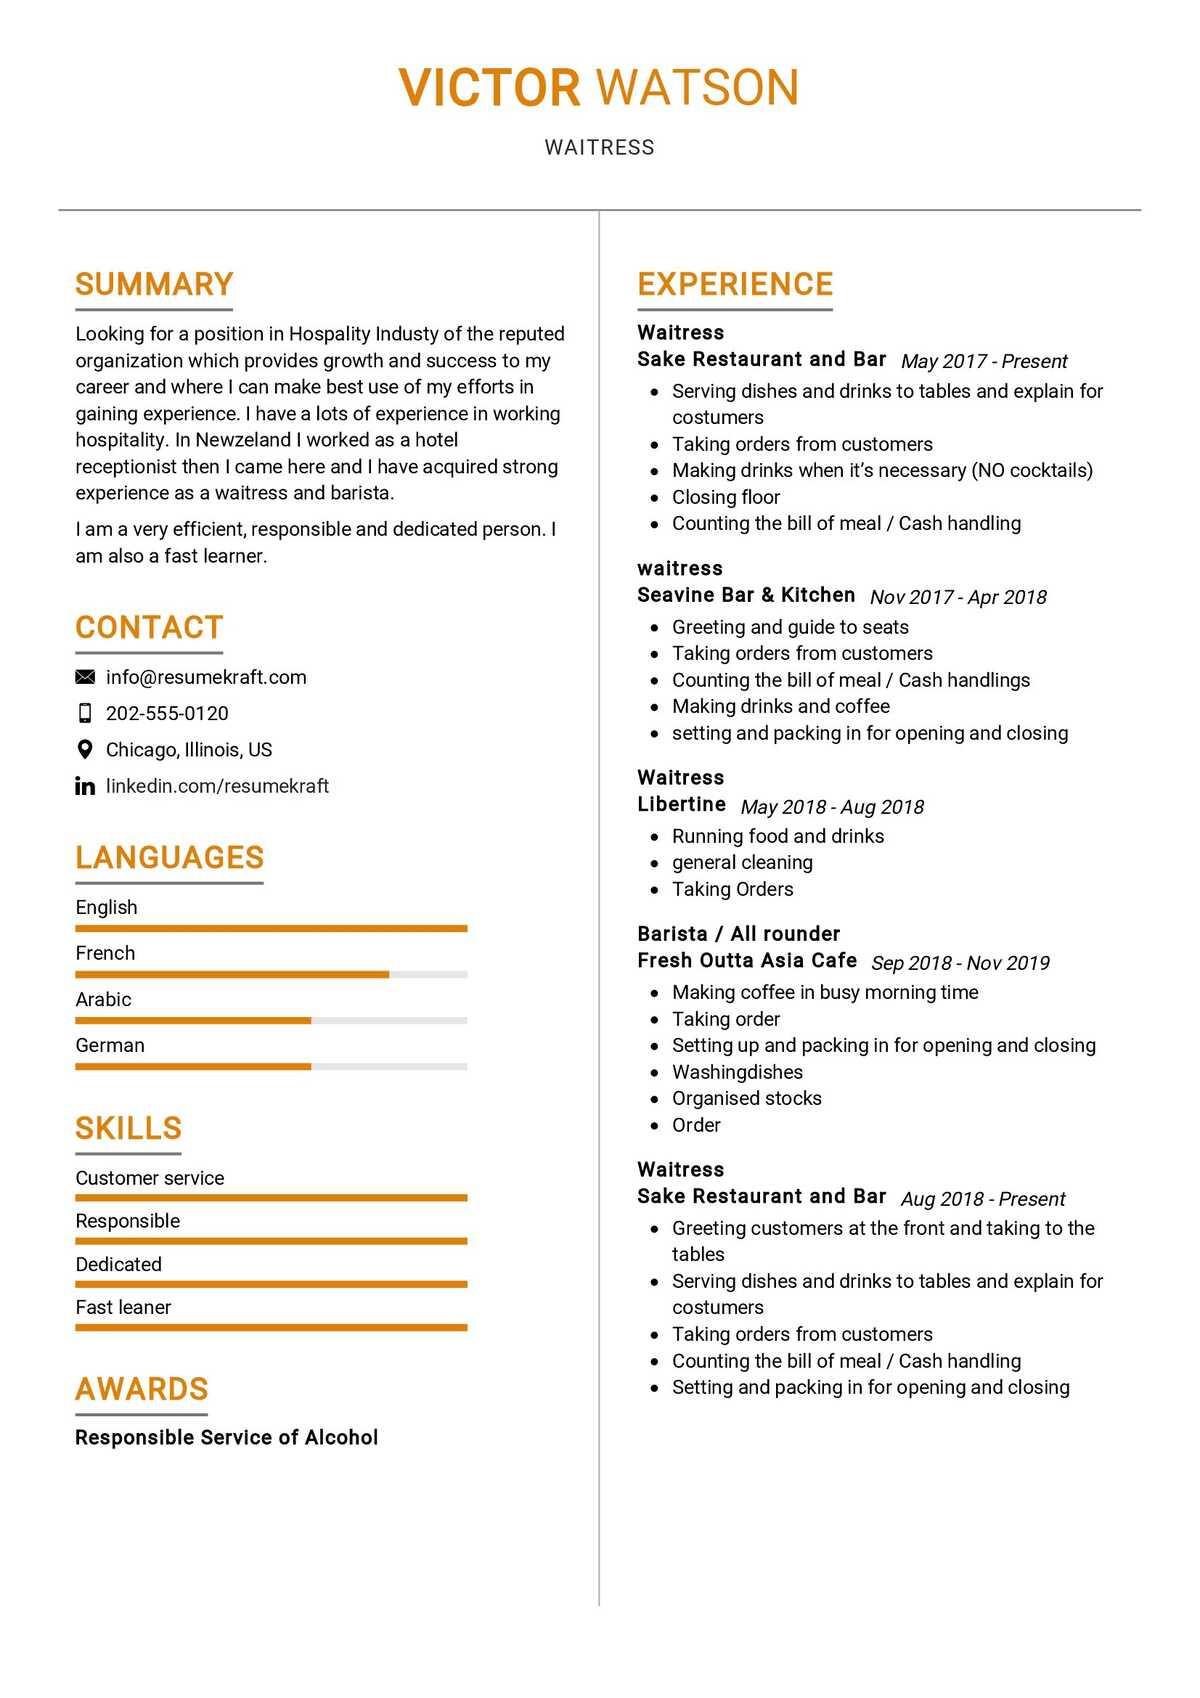 Sample Resume for Cafe All Rounder Waitress Resume Sample 2021 Writing Guide & Tips- Resumekraft